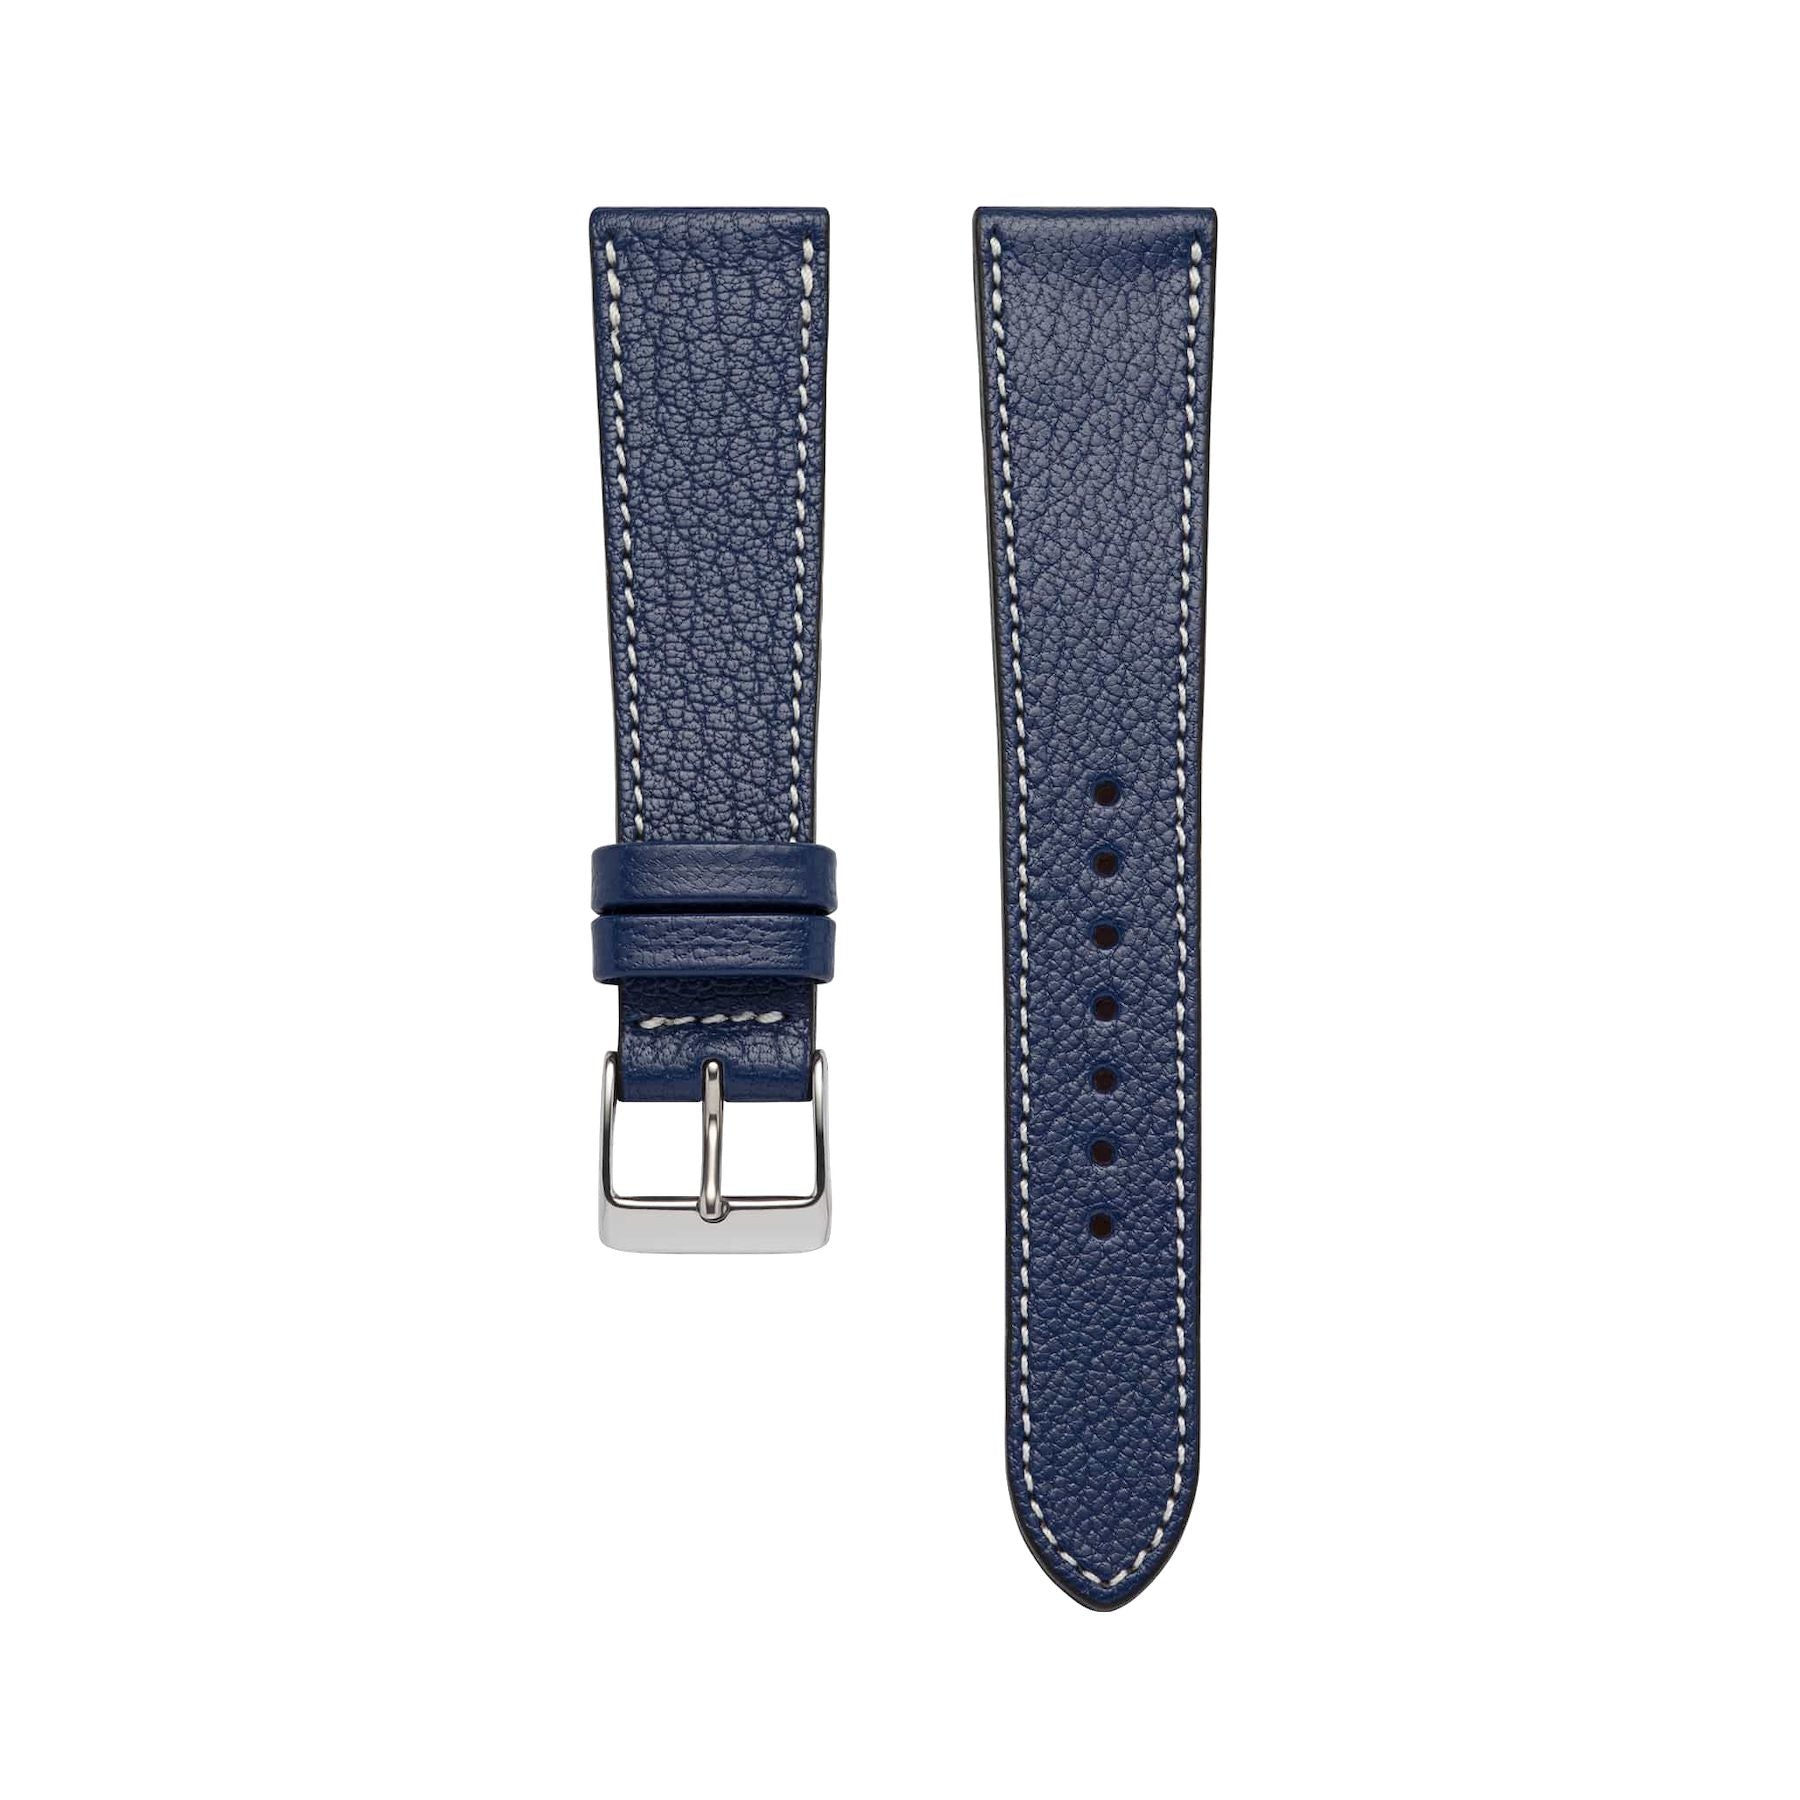 Goat Leather Slim | Armband aus Ziegenleder kompatibel mit Apple Watch-Blau-BerlinBravo